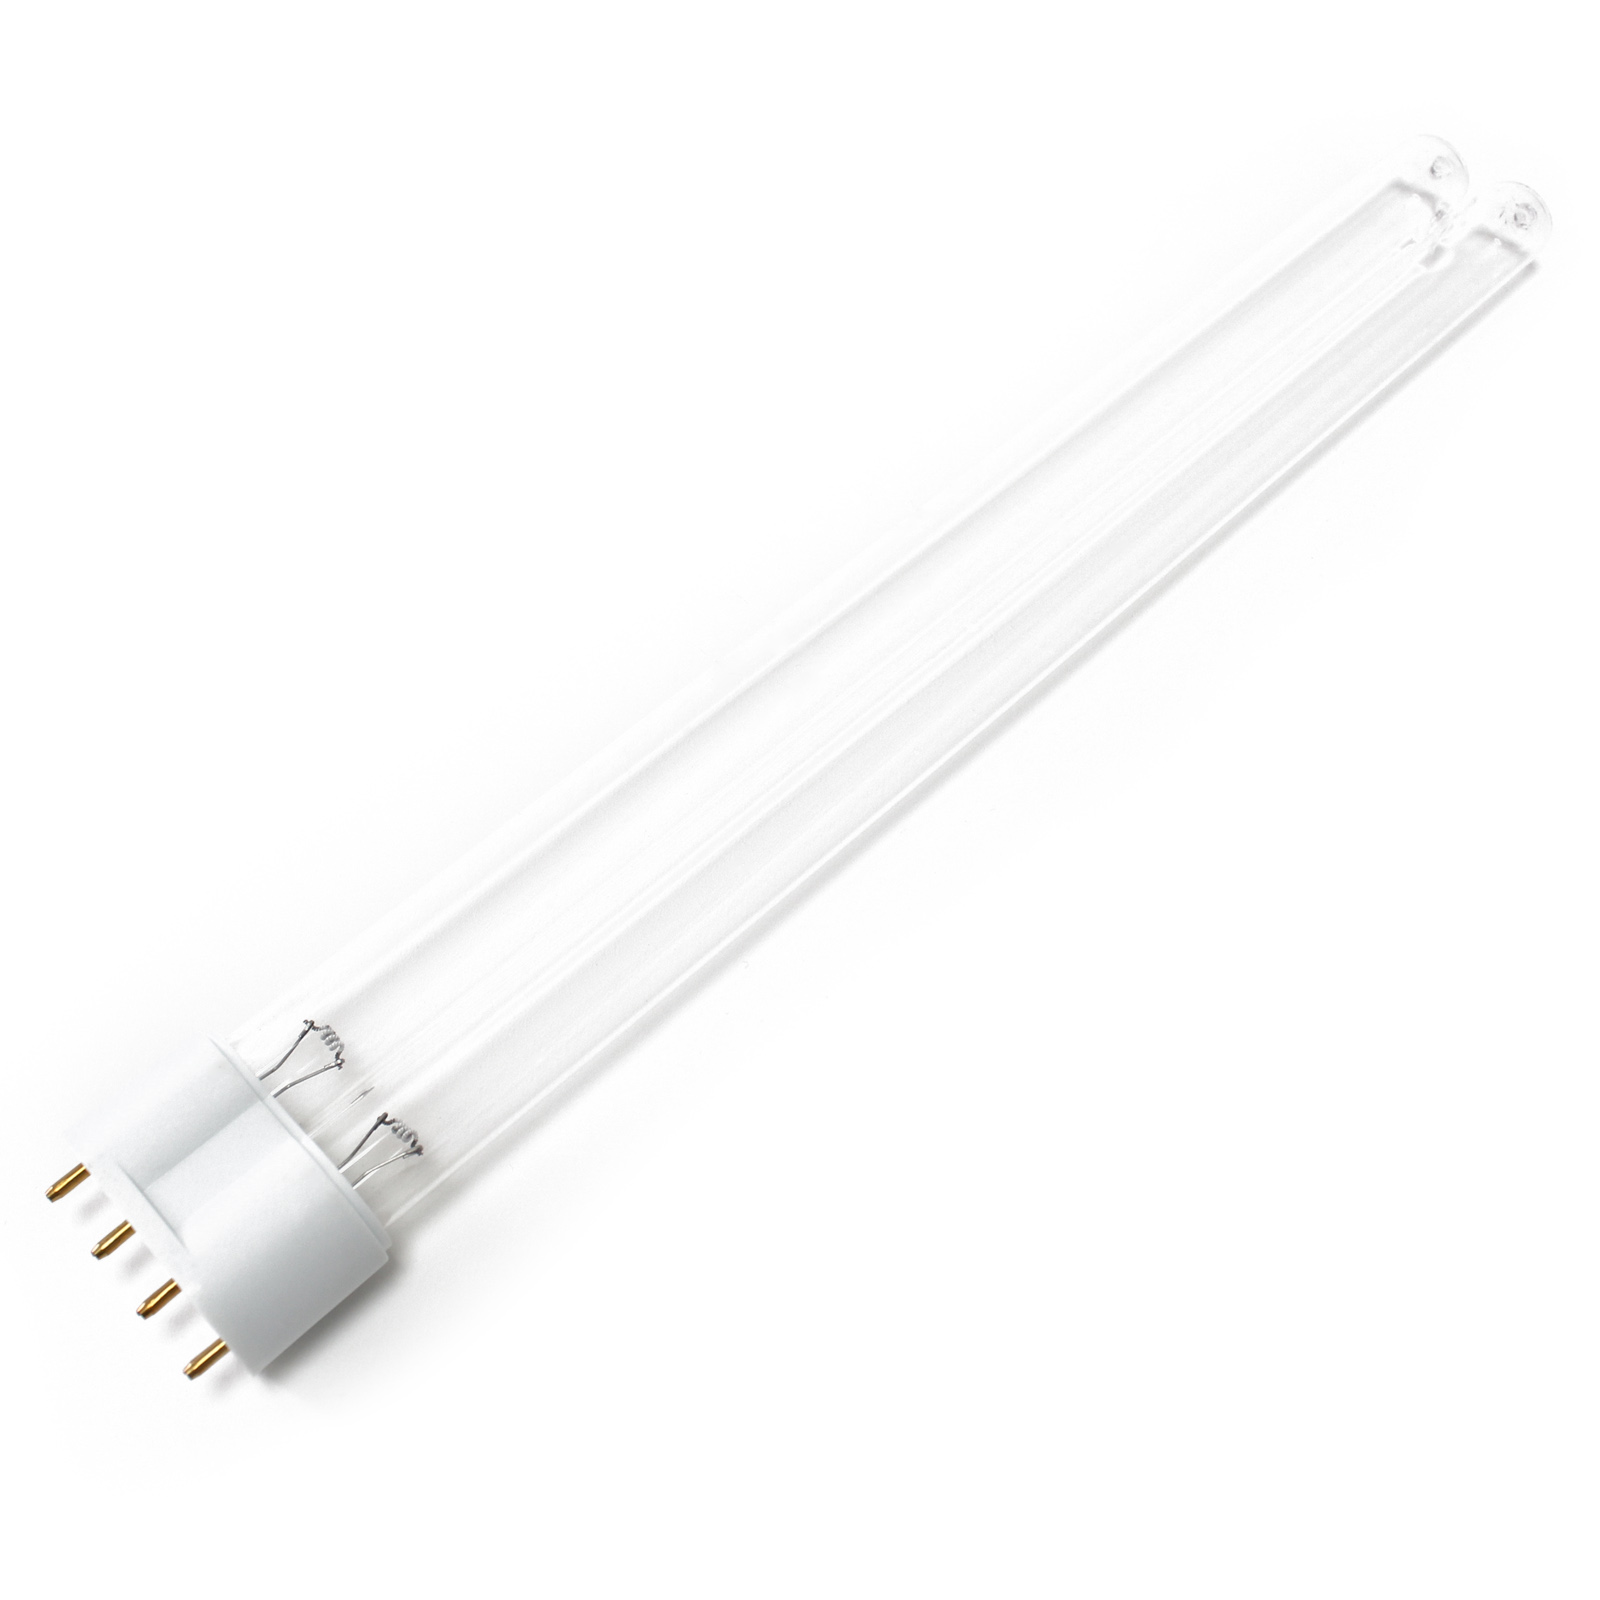 CUV-136 UV-C Lampe Röhre 36W Teich-Klärer UVC Leuchtmittel